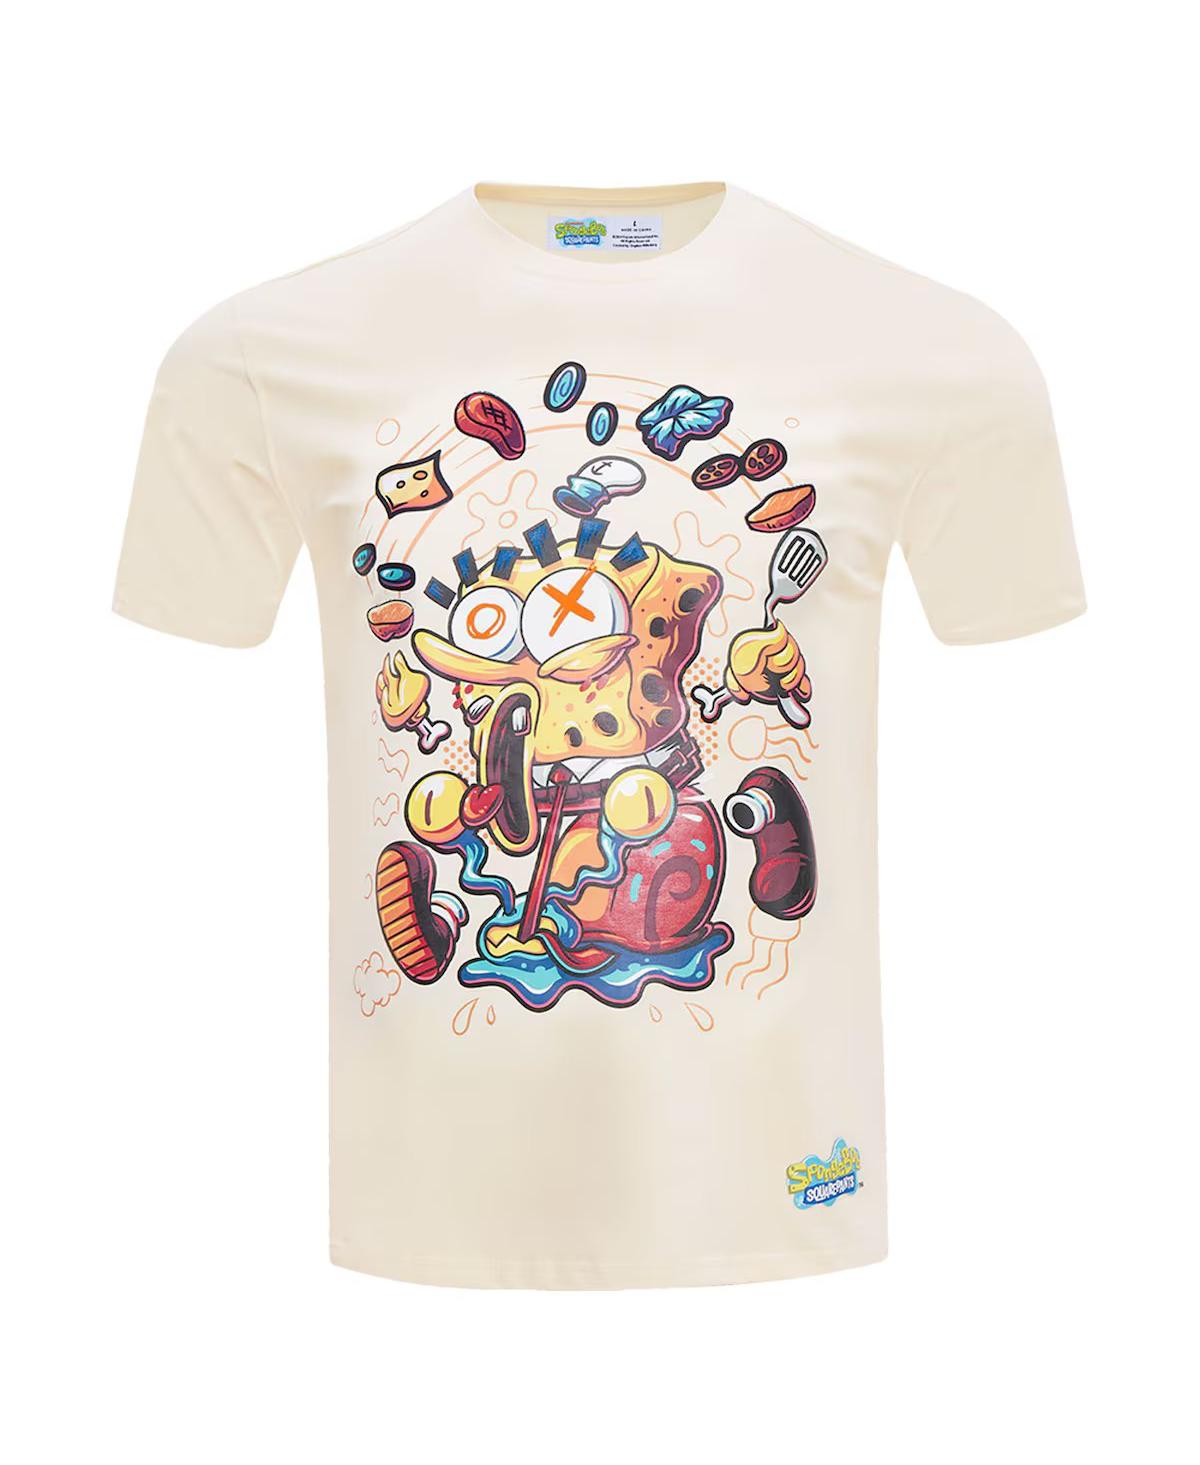 Shop Freeze Max Men's Natural Spongebob Squarepants T-shirt